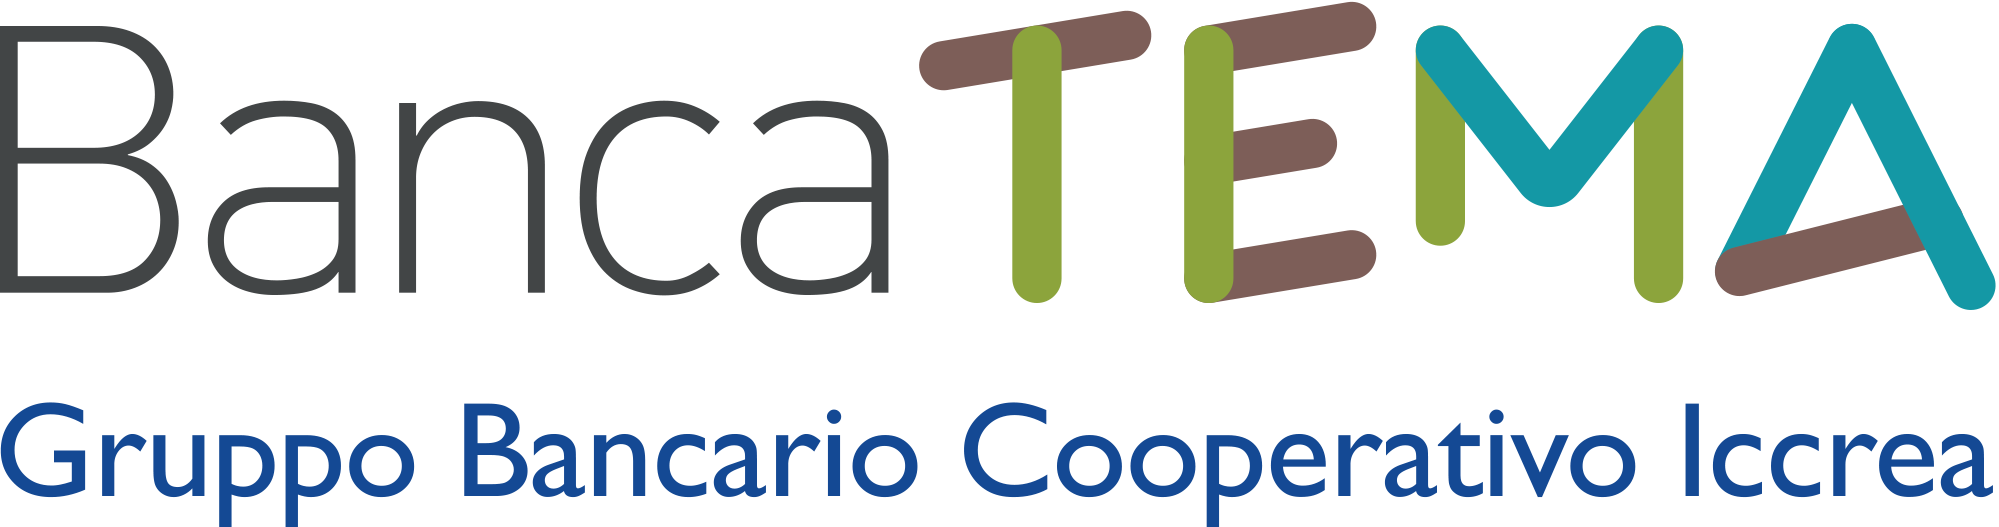 Logo Banca TEMA